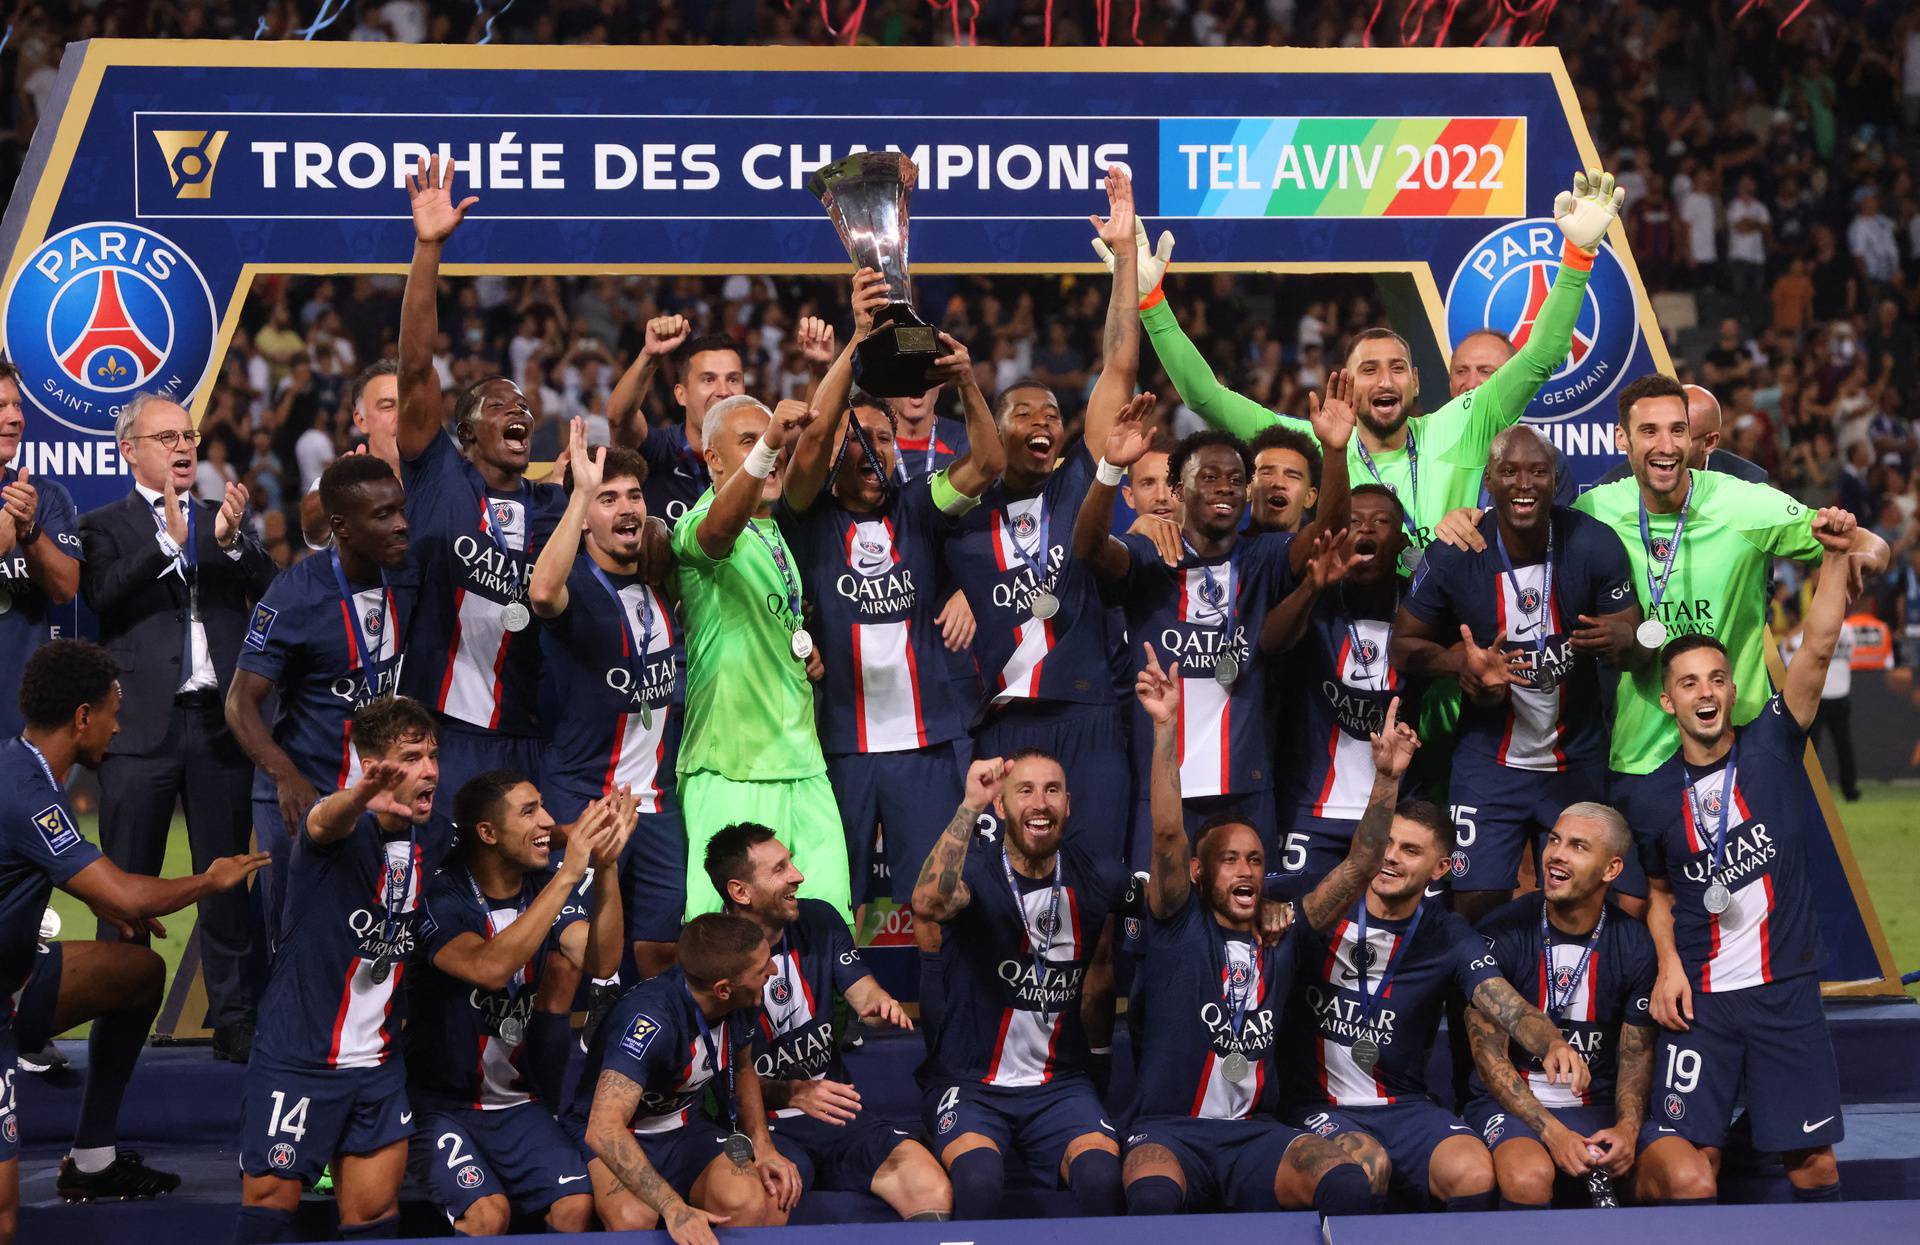 Trophee des Champions - Paris St Germain v Nantes